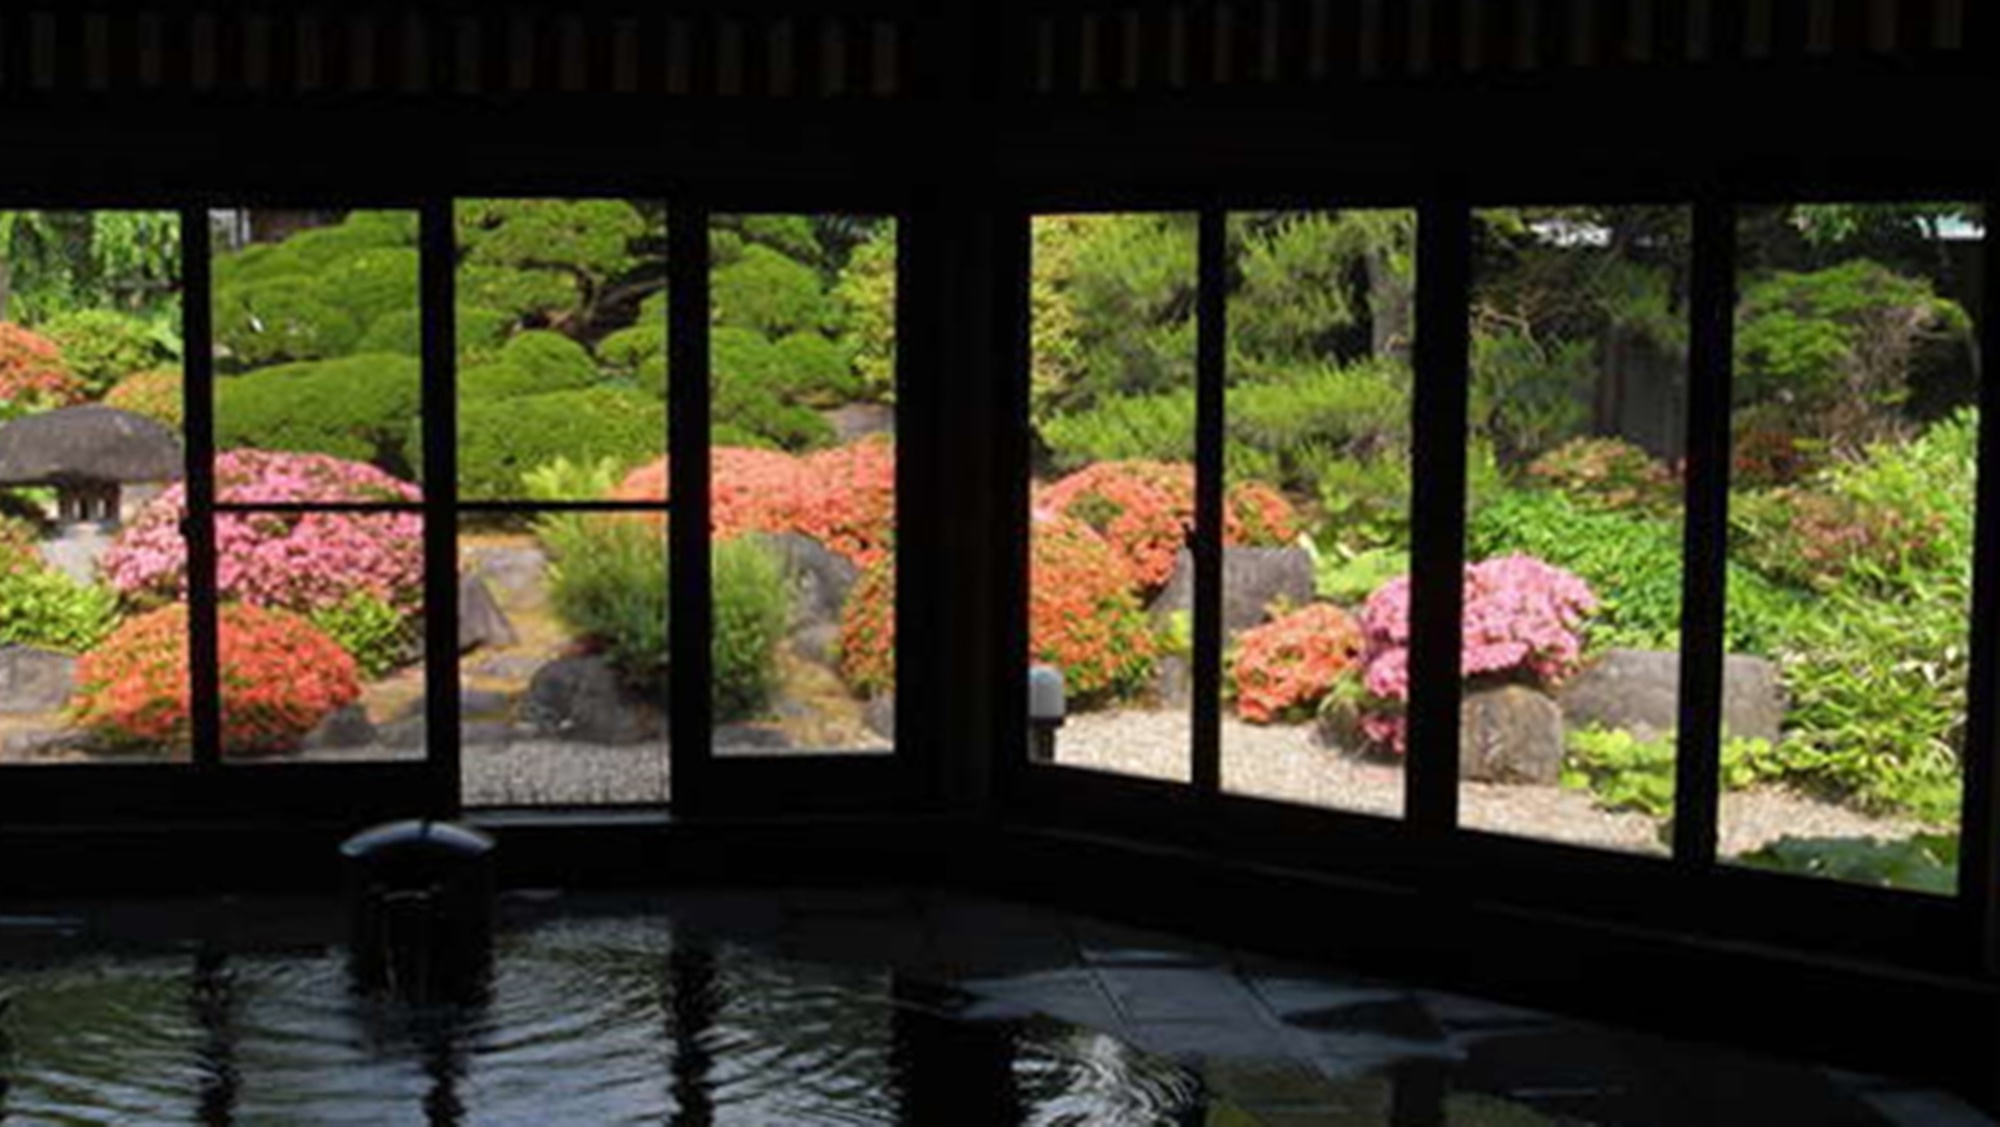 【檜造りの八角堂】やわらかくしっとりした単純泉のお湯。四季折々を映す庭園の眺めも楽しんで